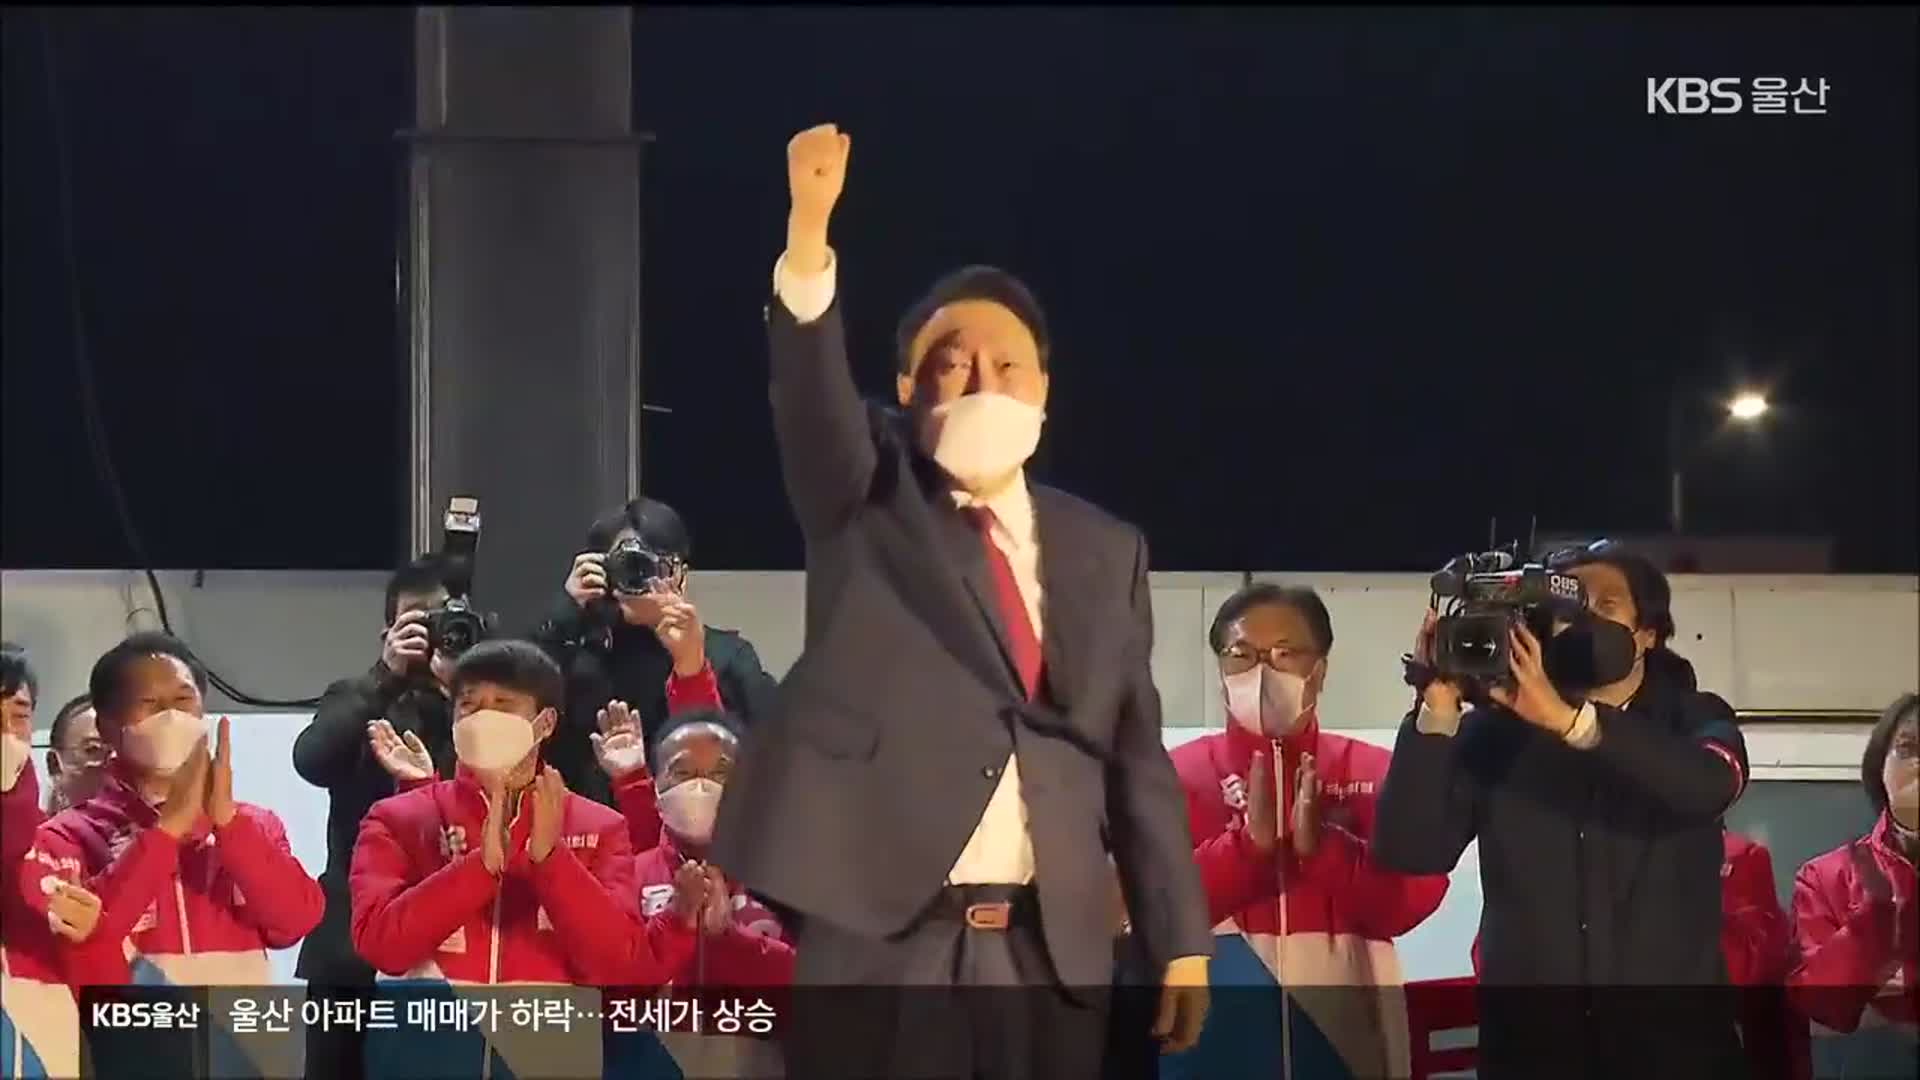 윤석열 울산 54% 득표…“정권교체 열망” “선전”